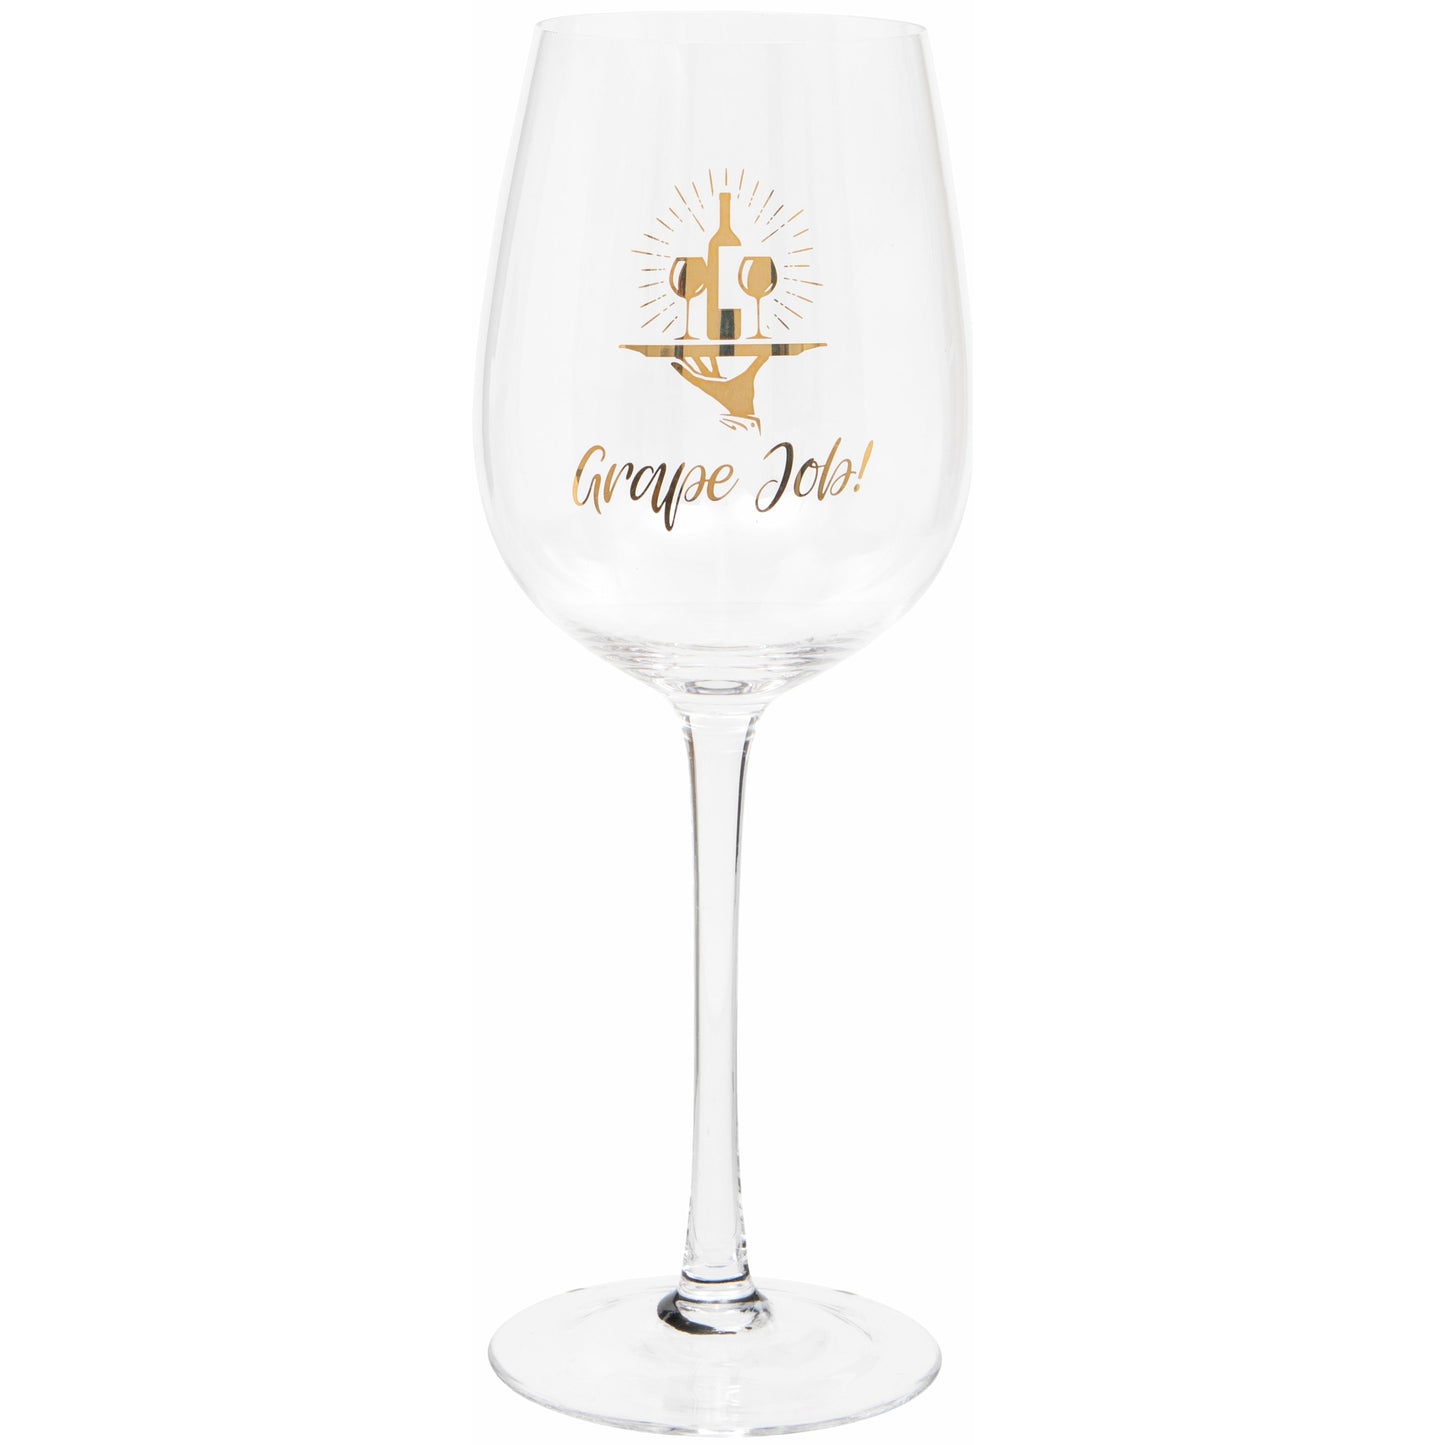 'Grape Job' Wine Glass